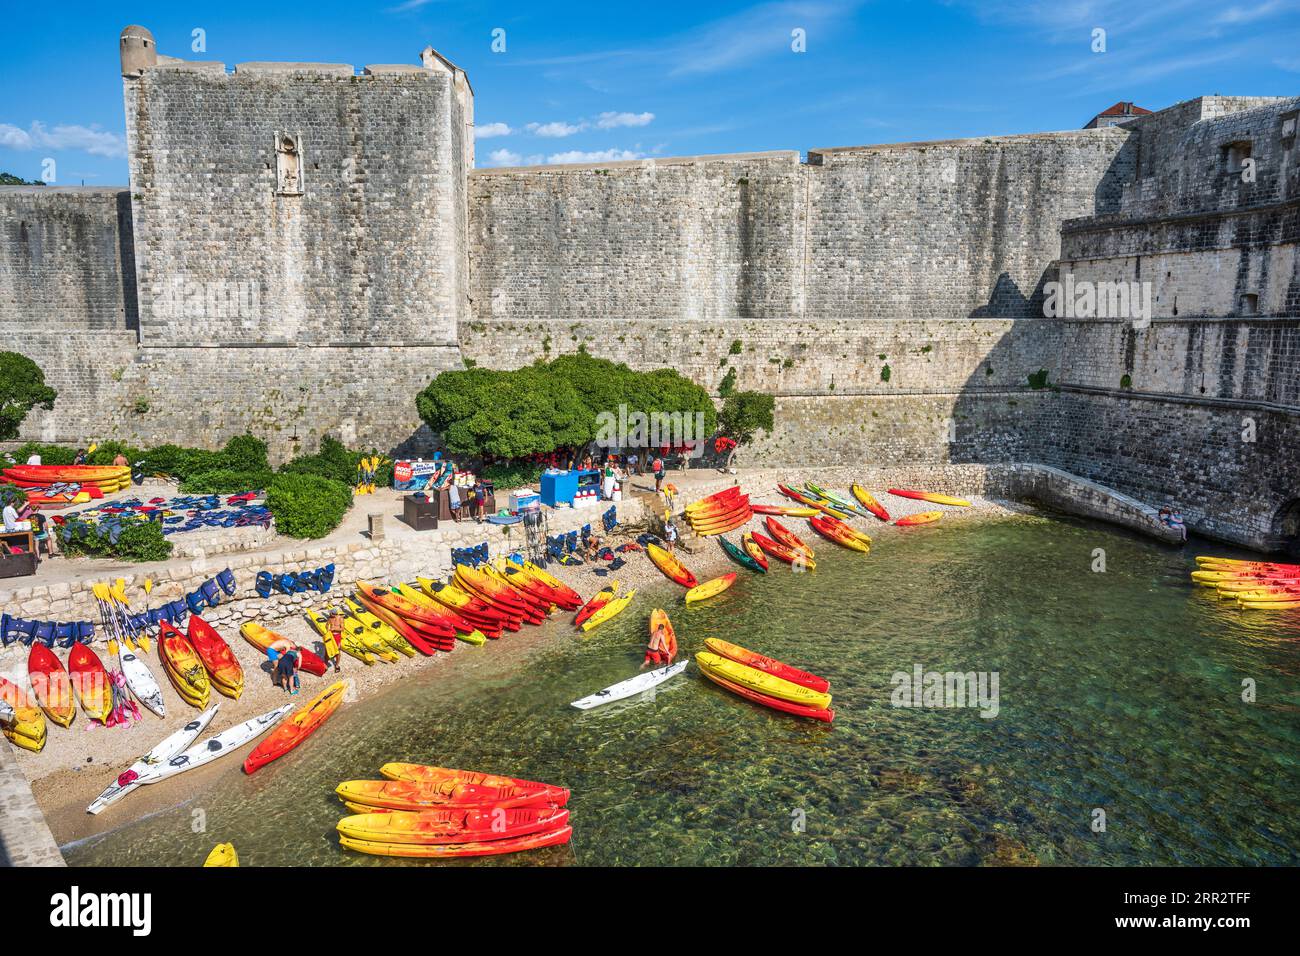 Le canoe si allineano sulla spiaggia sabbiosa di Kolorina Bay, il porto occidentale dell'antica città fortificata di Dubrovnik sulla costa dalmata della Croazia Foto Stock